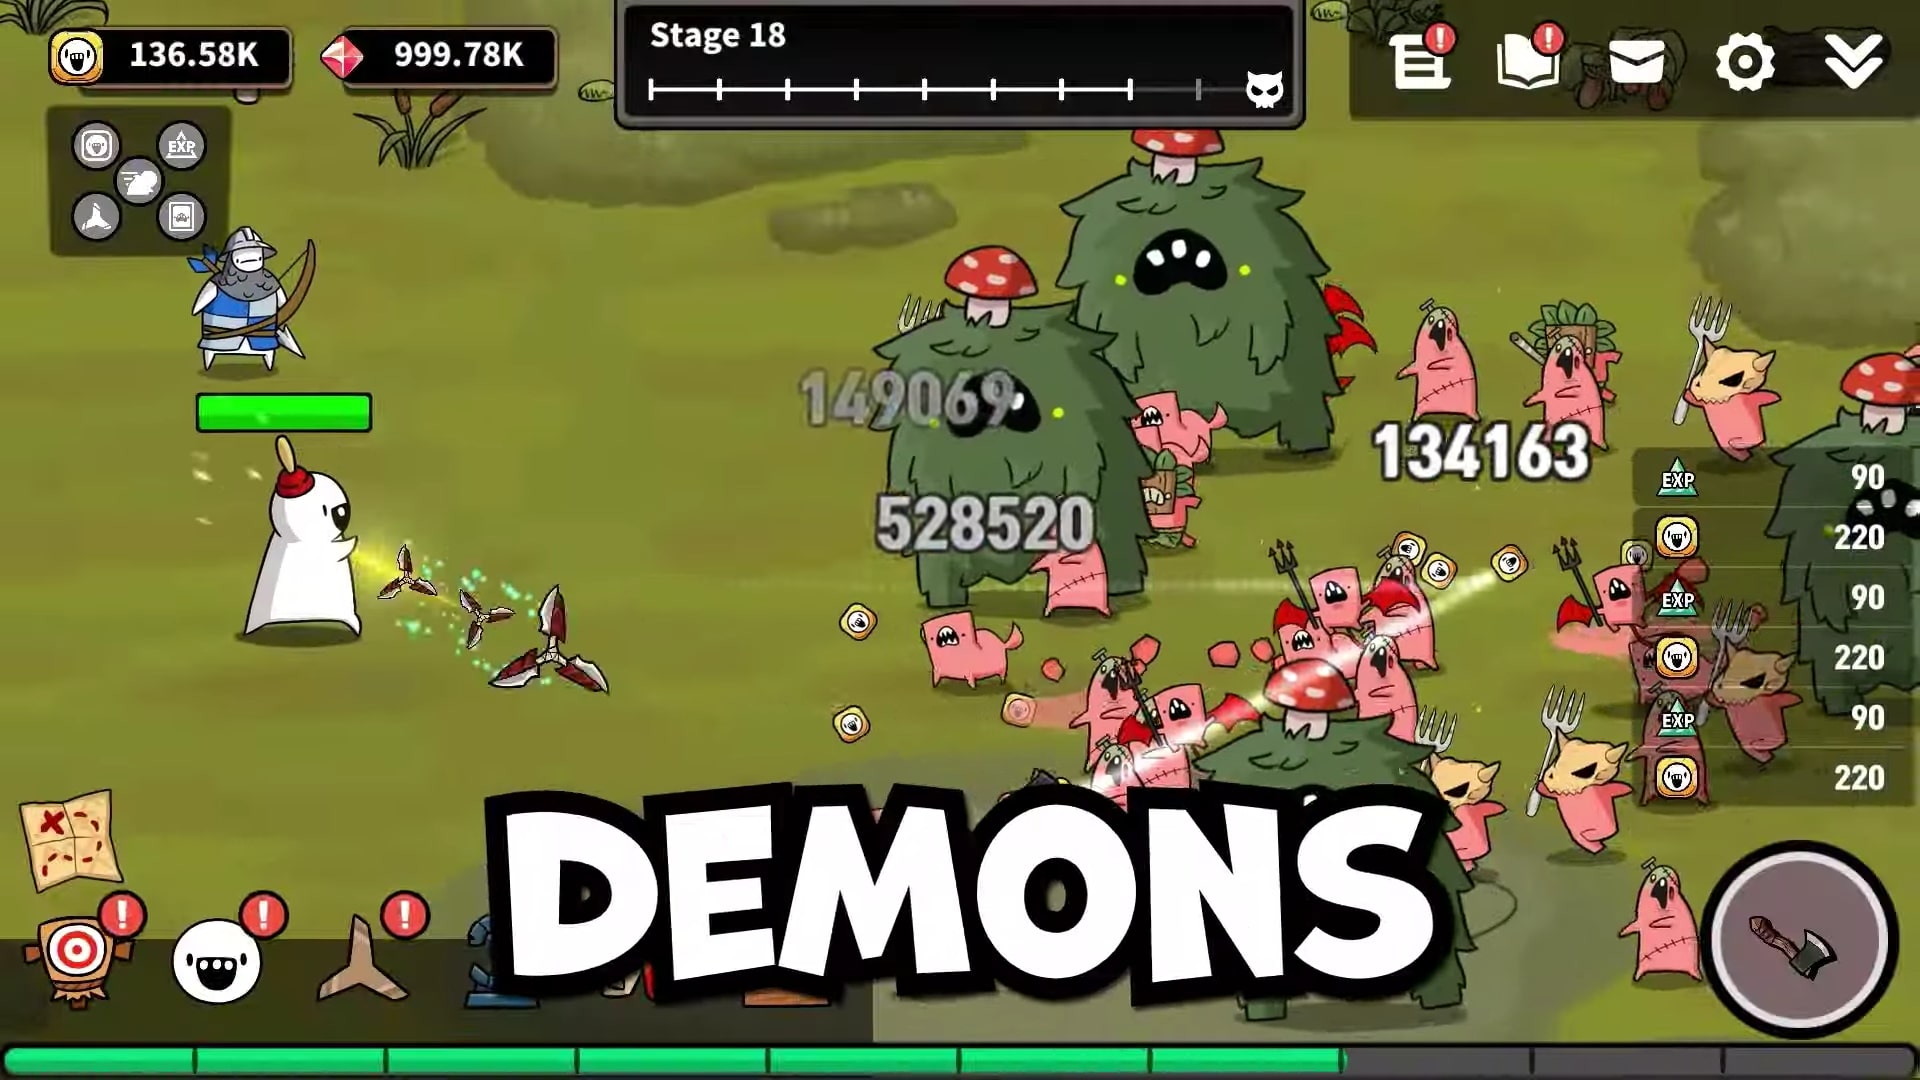 Boomerang RPG: Join Dude in Battling Demons on Mobile!